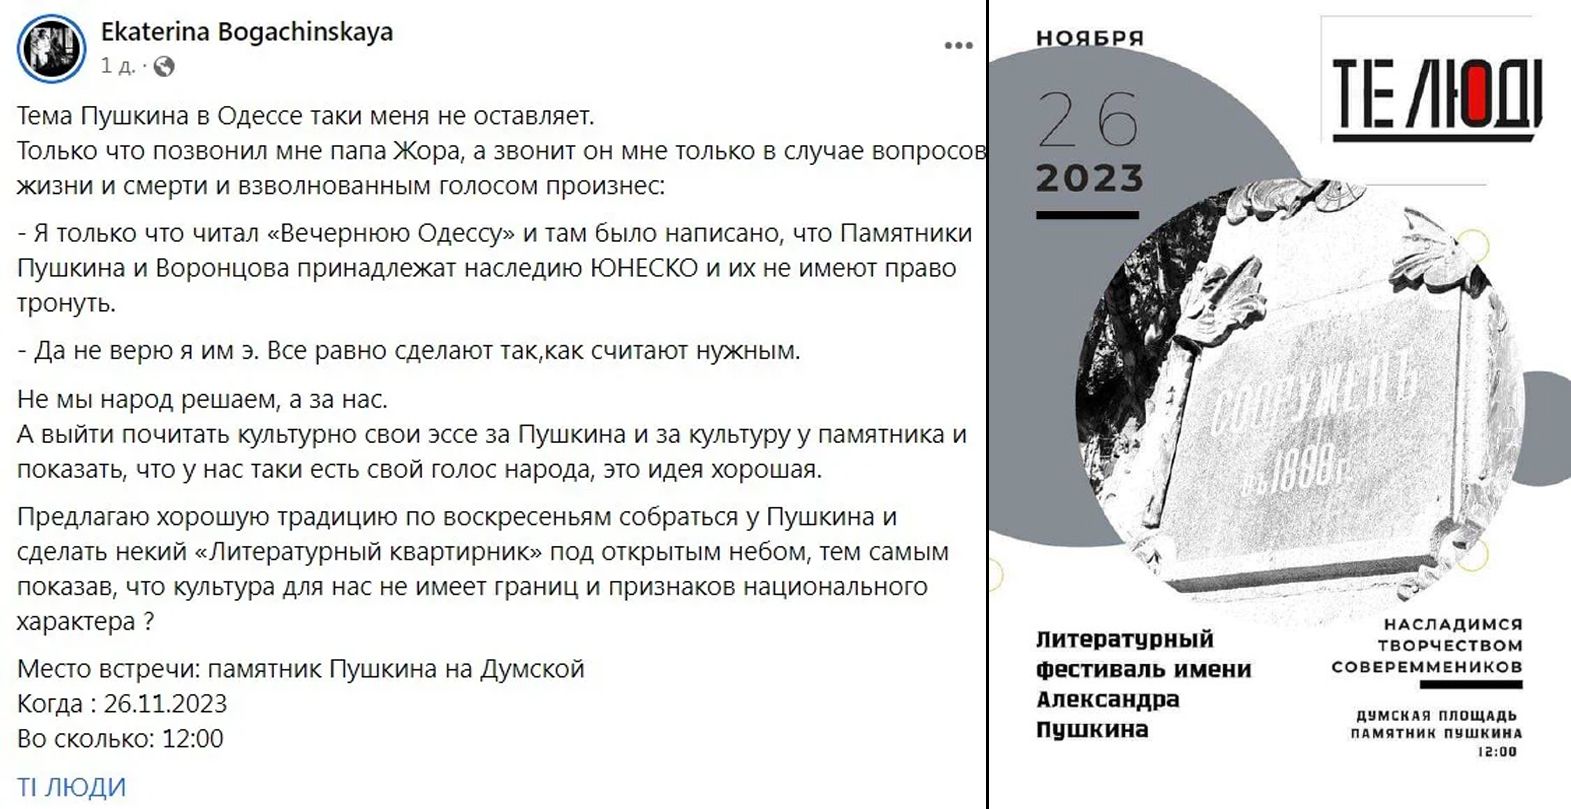 В Одессе местная писательница планировала акцию против сноса памятника Пушкину 1